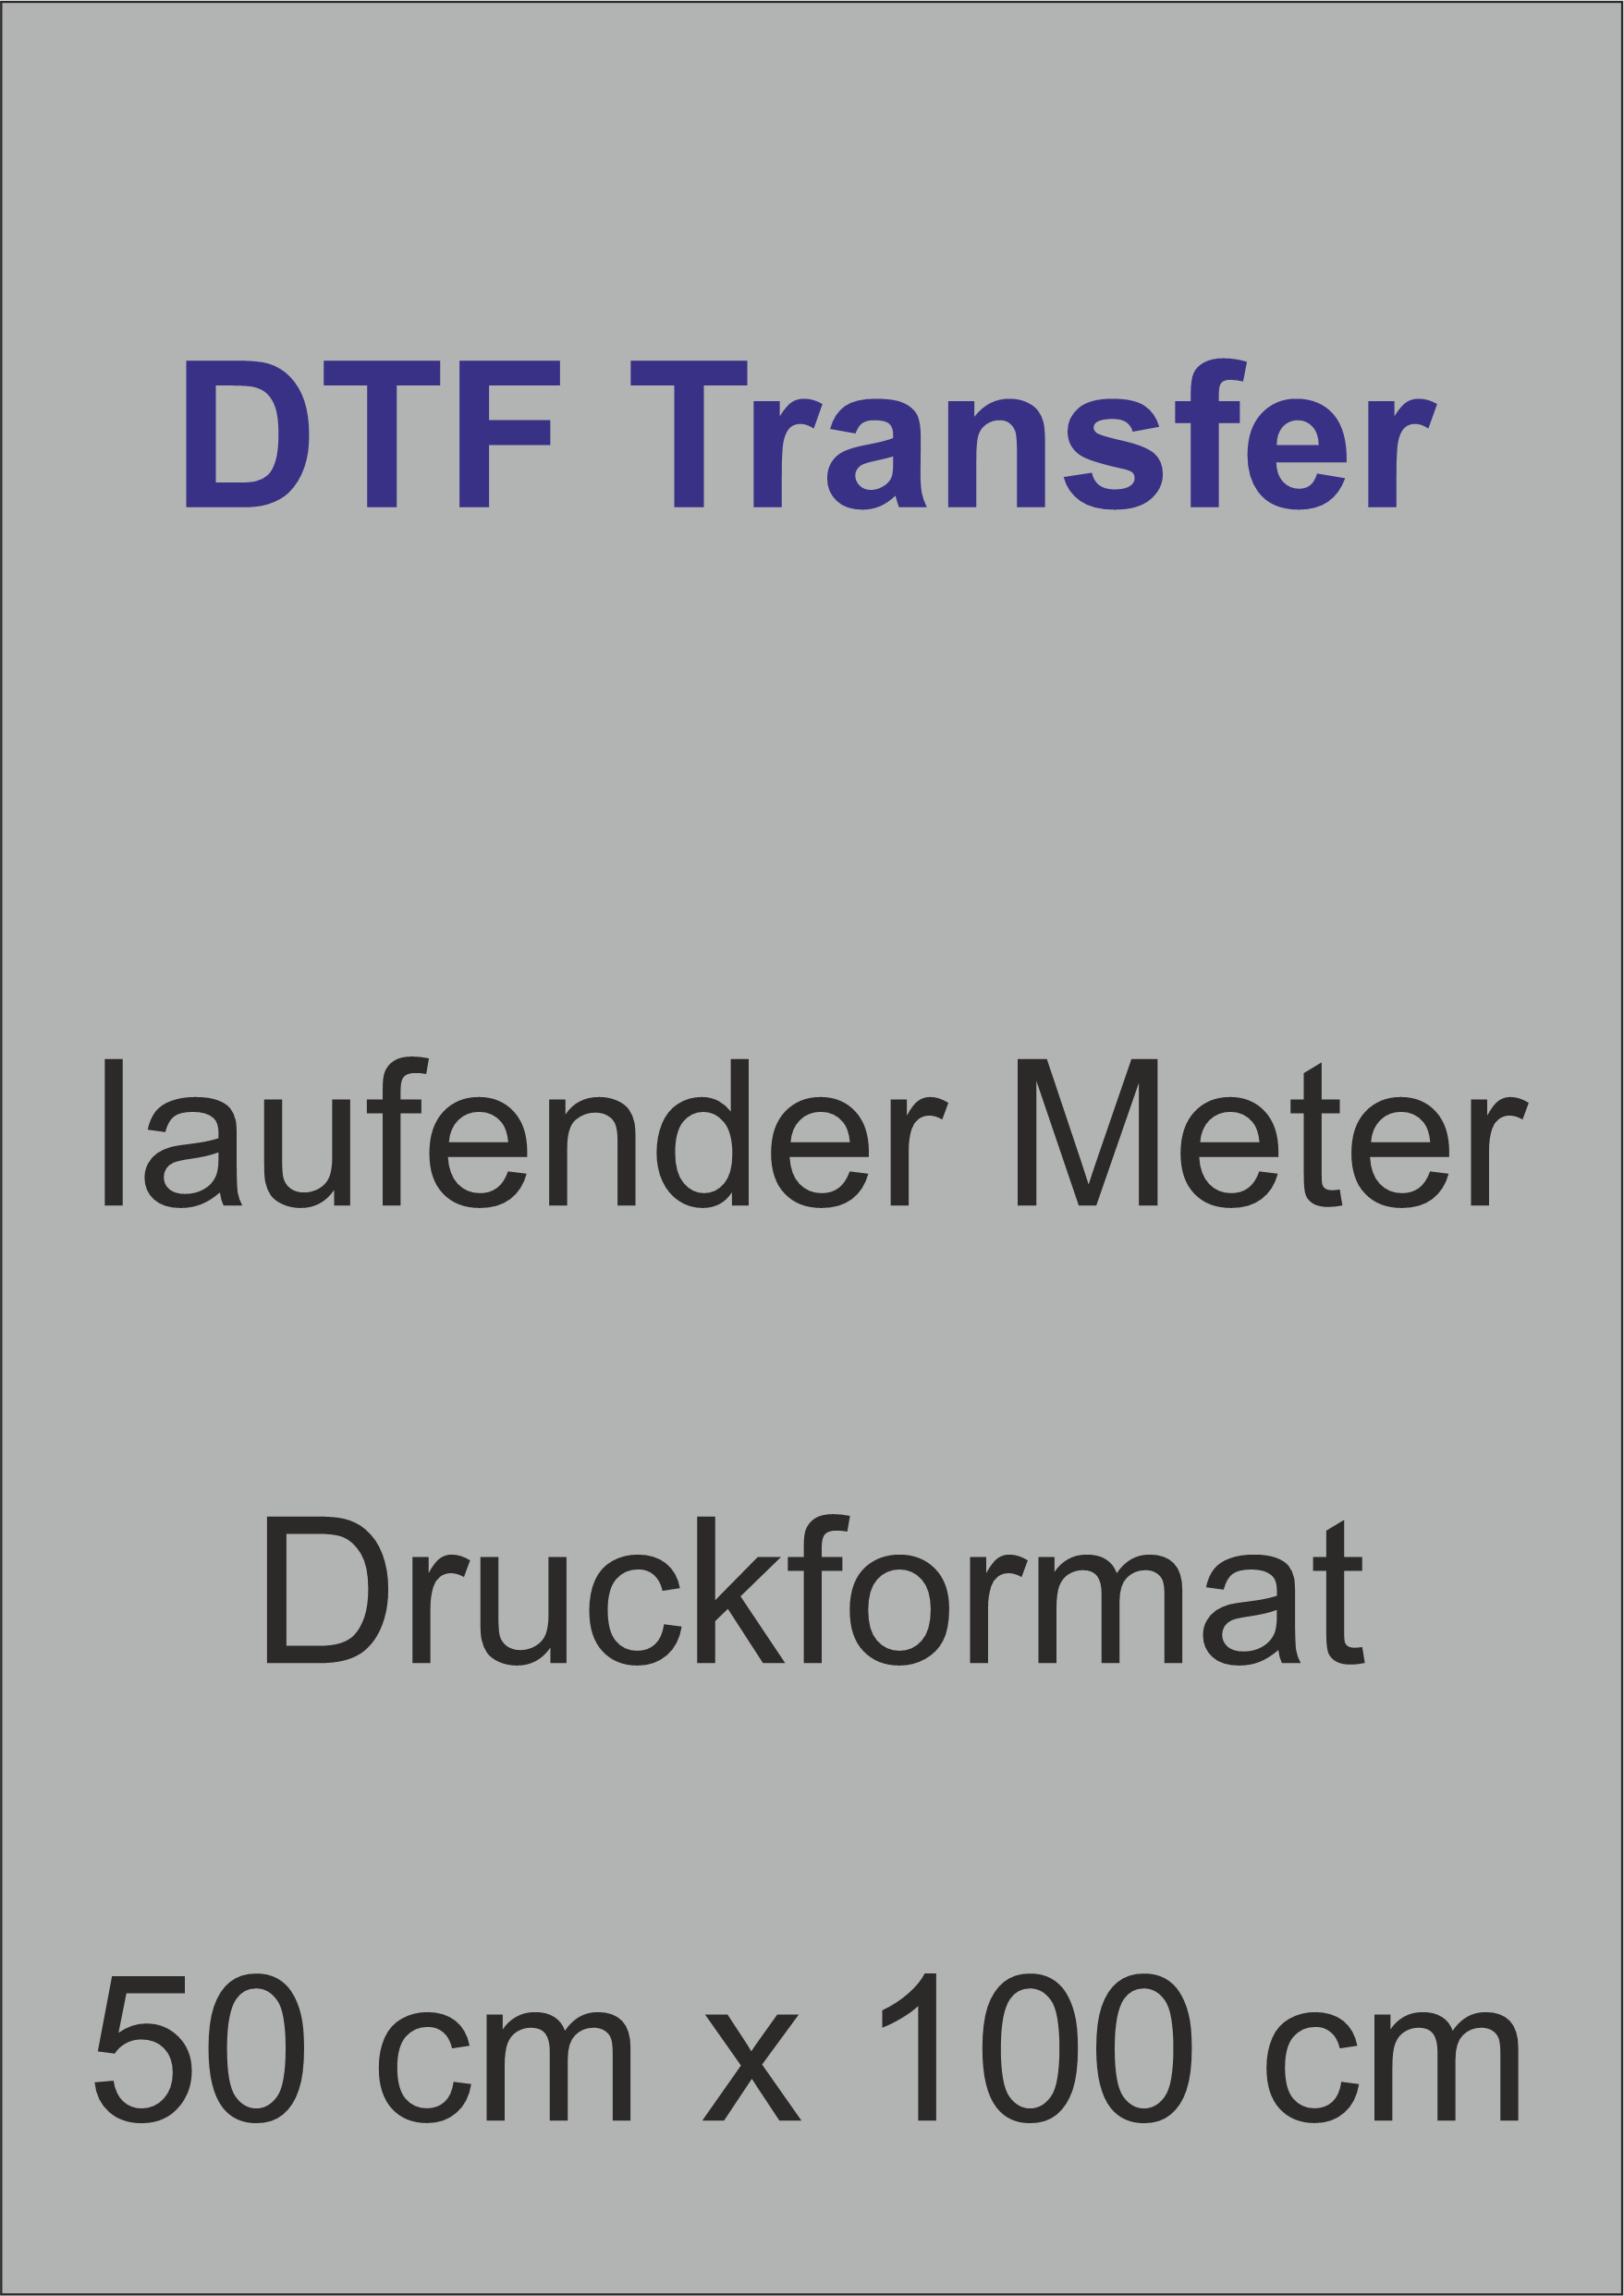 DTF Transfer 50 cm x 100 cm